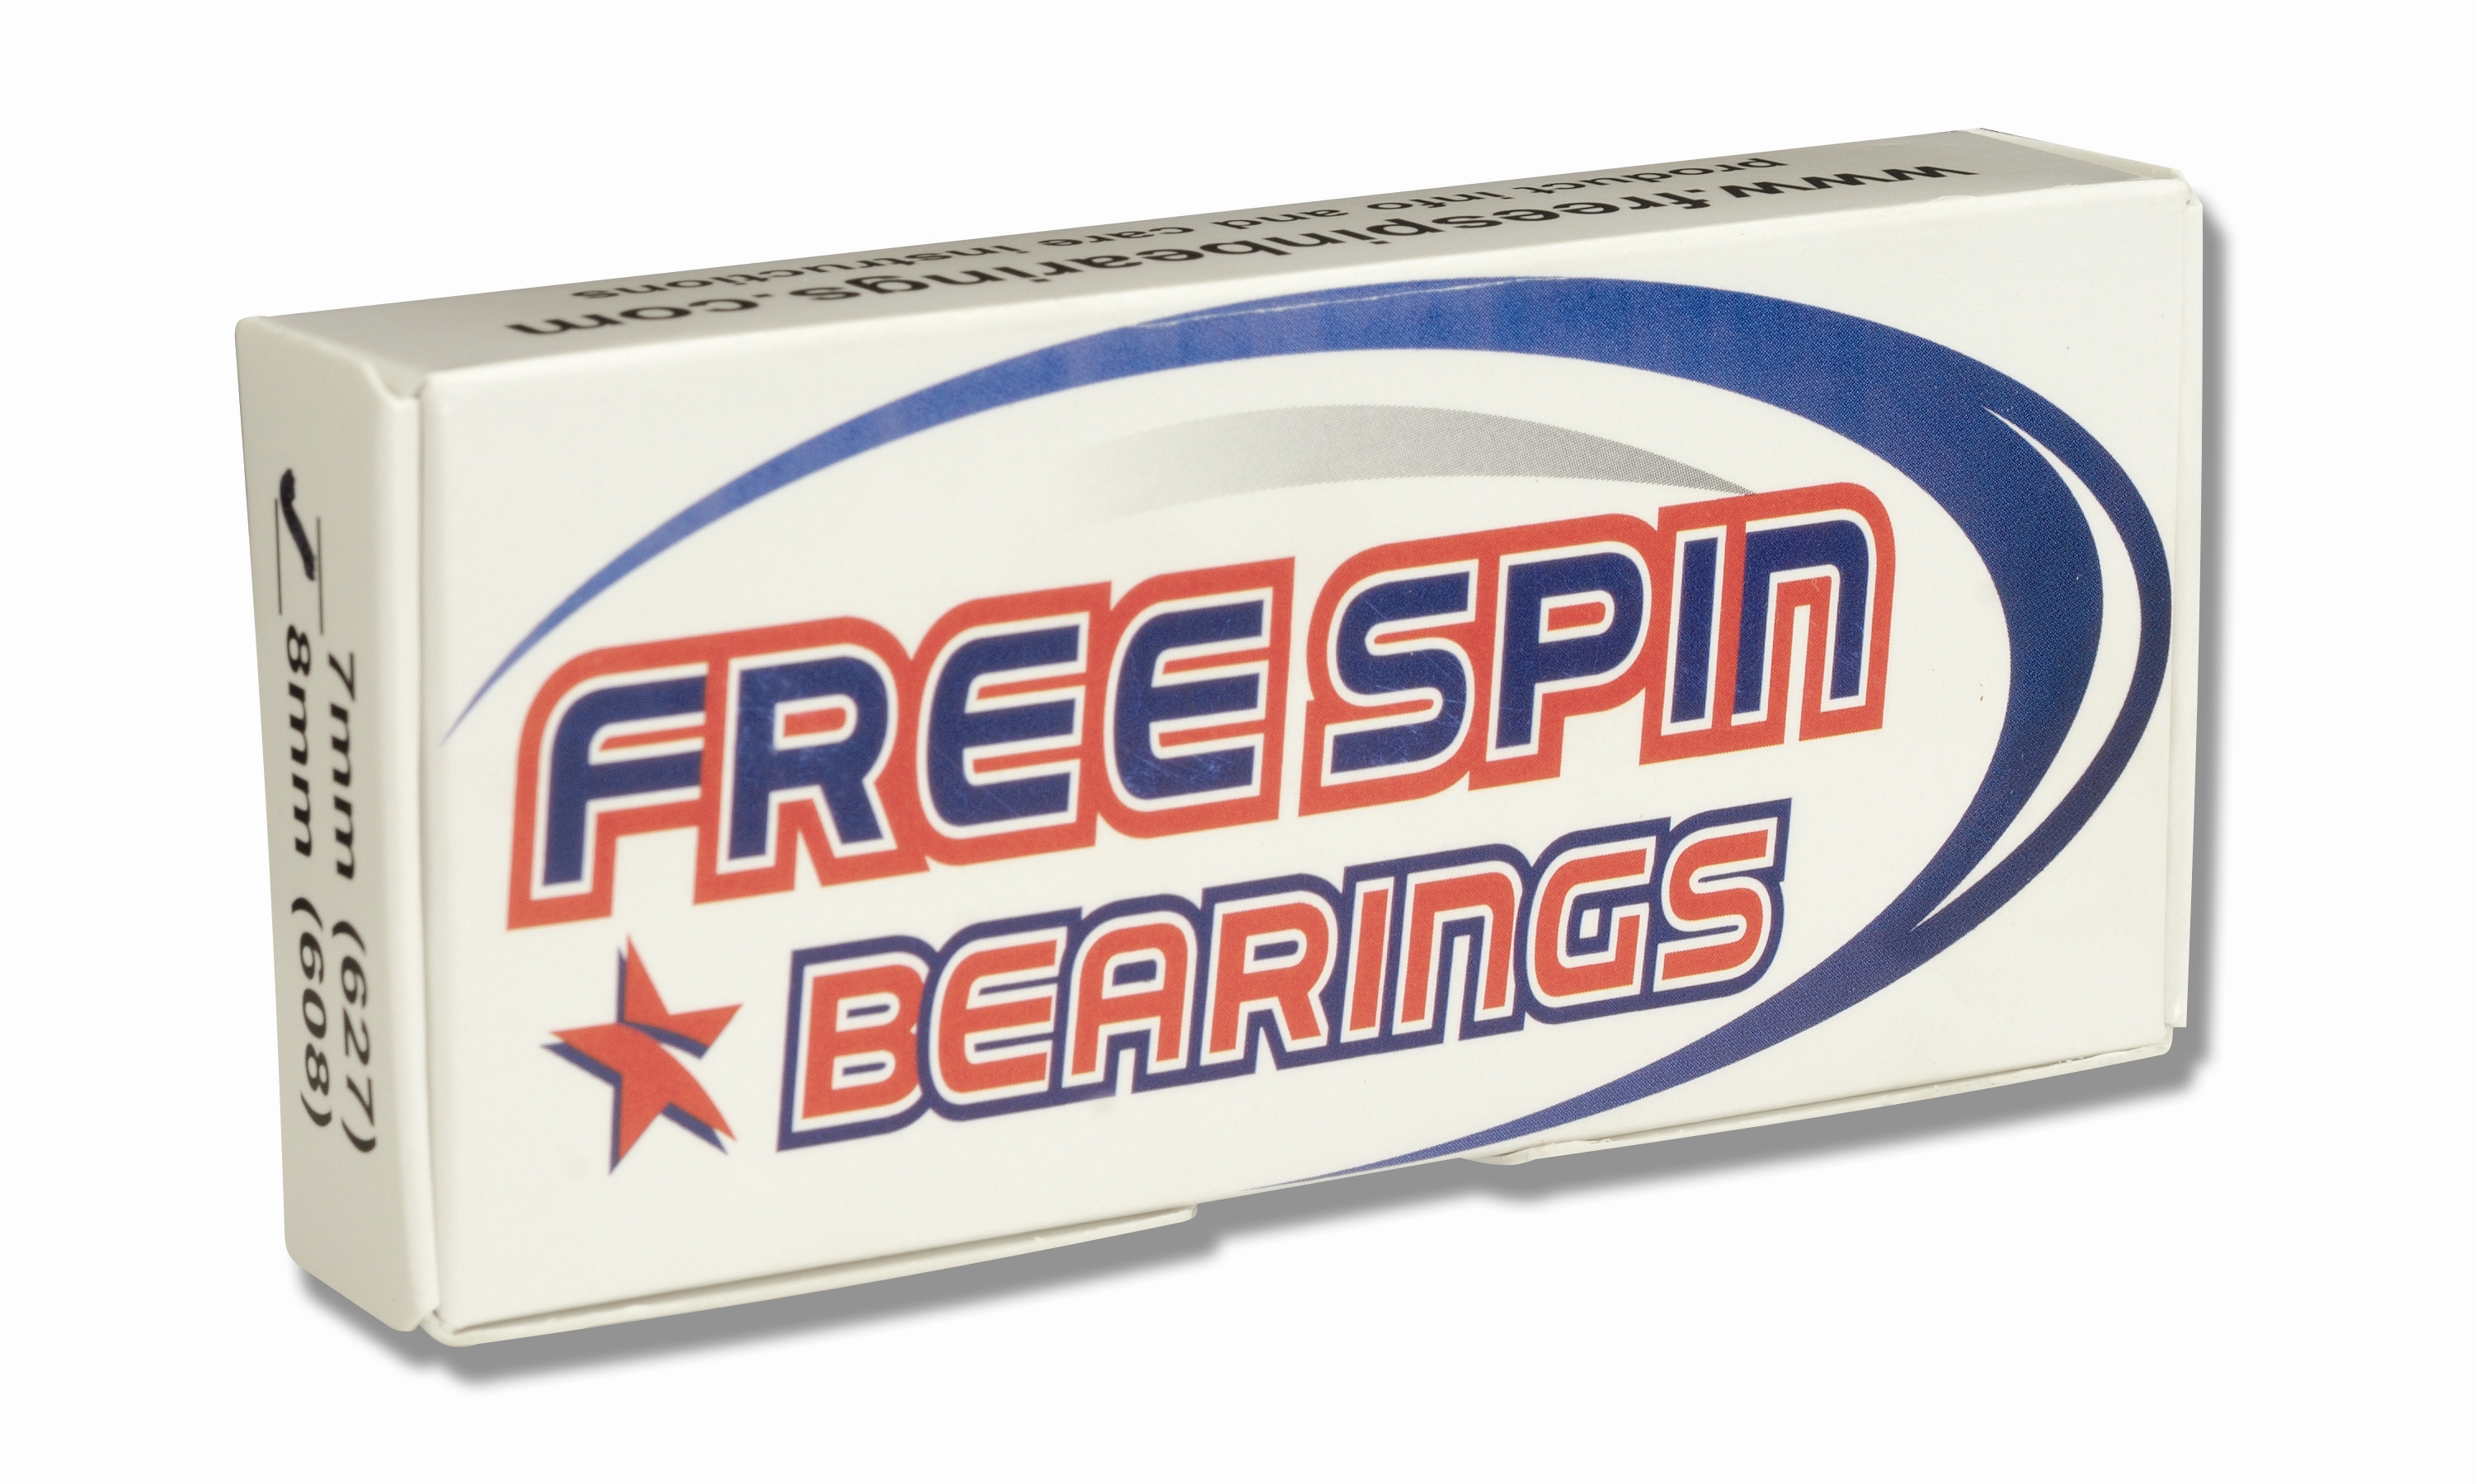 freespin bearings